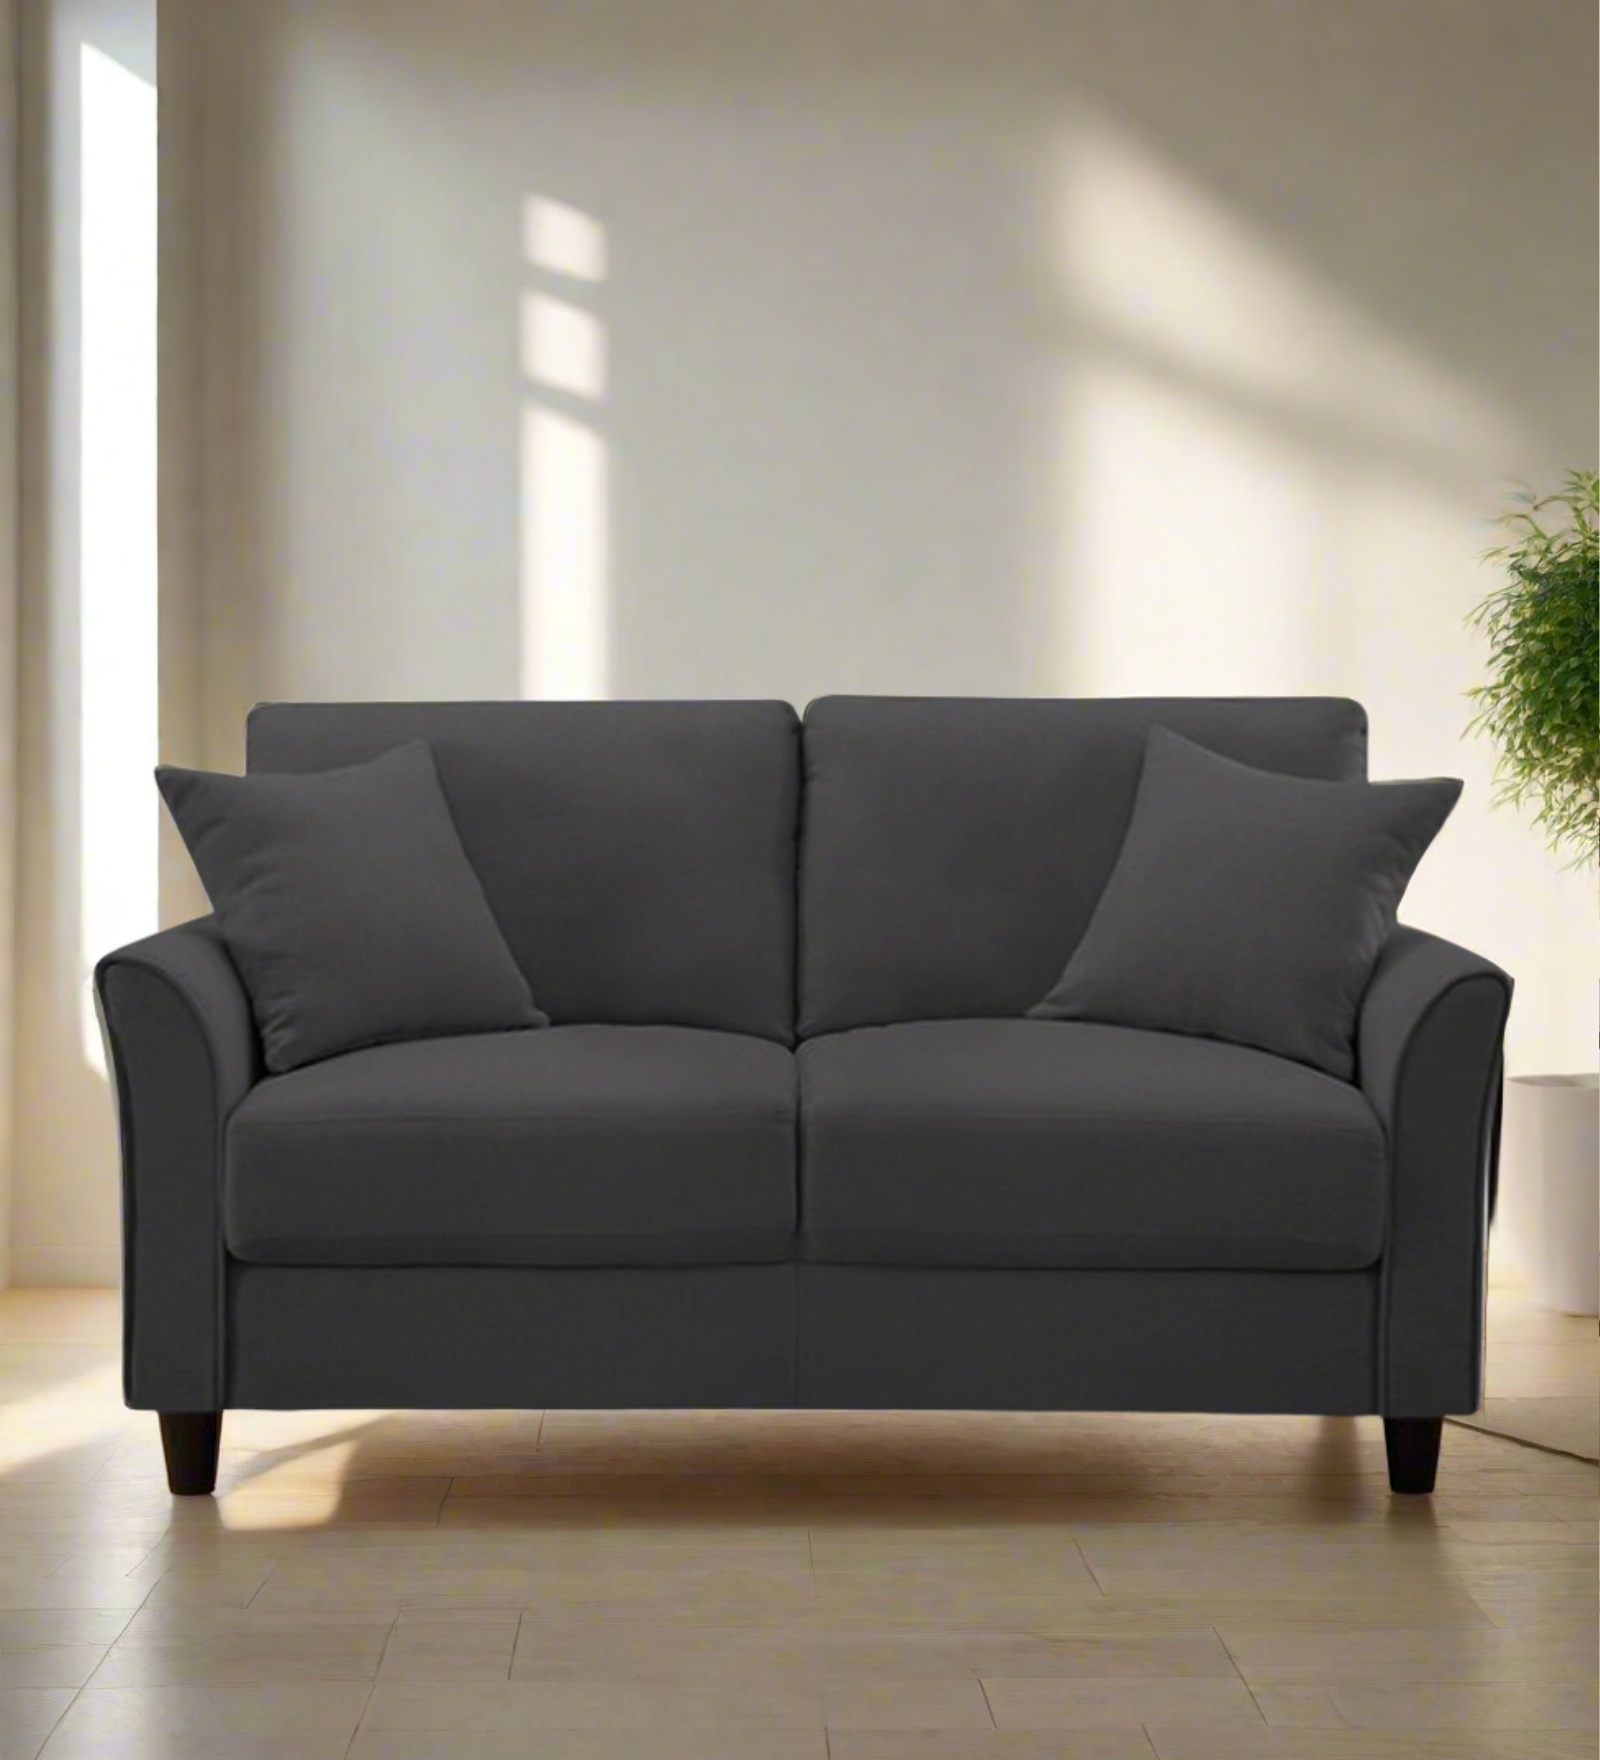 Daroo Velvet 2 Seater Sofa In Davy Grey Colour